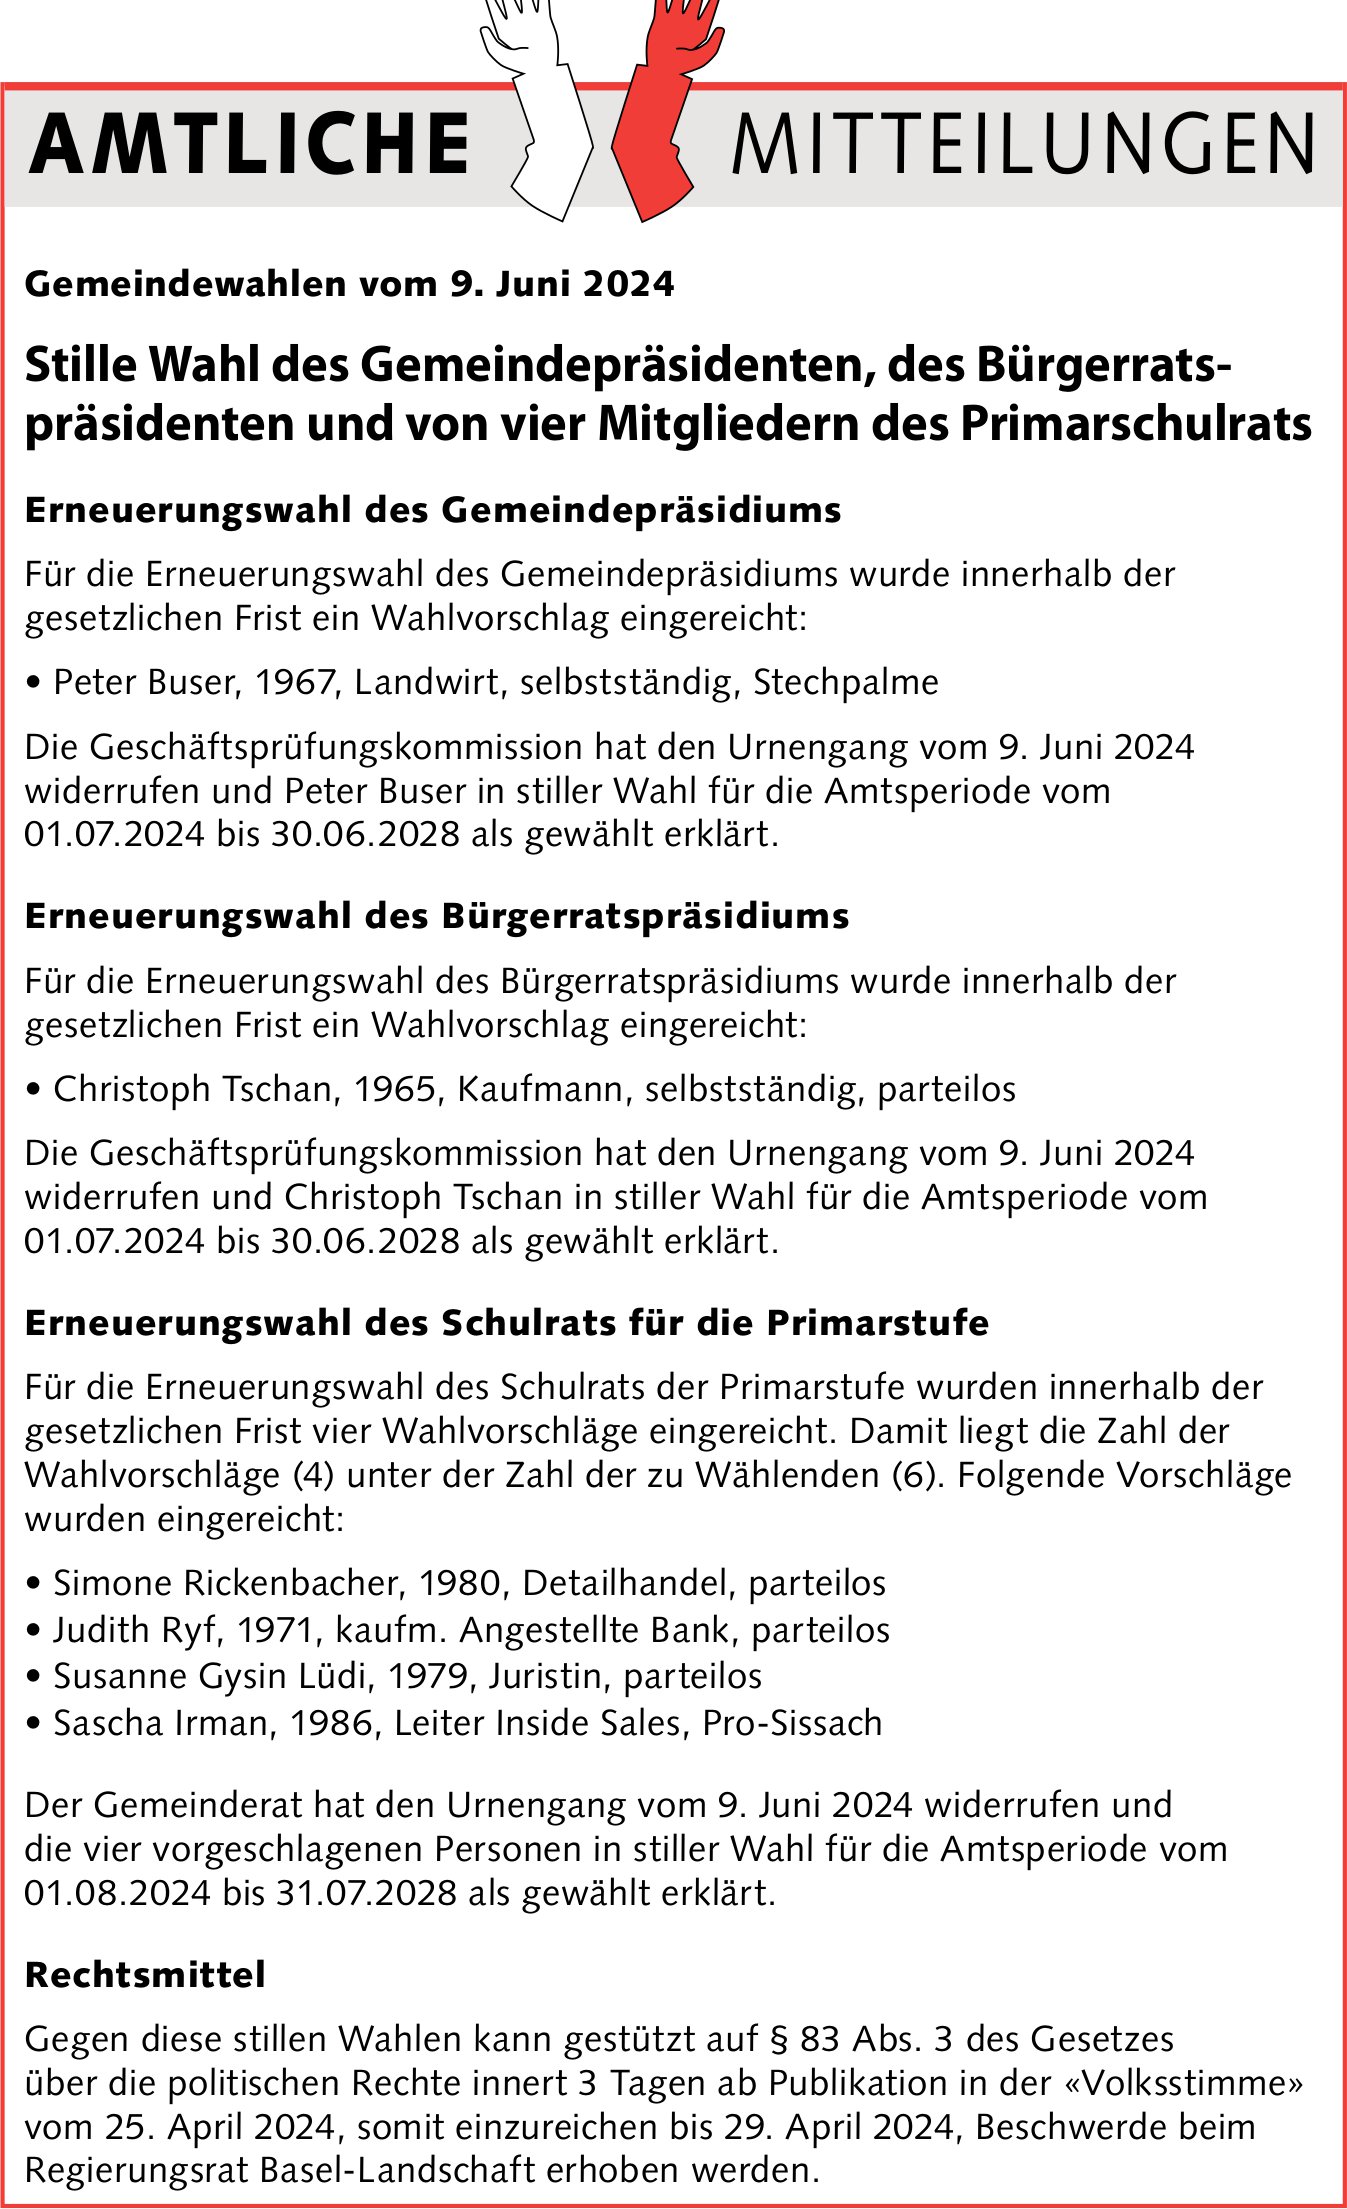 Amtliche Mitteilungen - Gemeindewahlen vom 9. Juni 2024